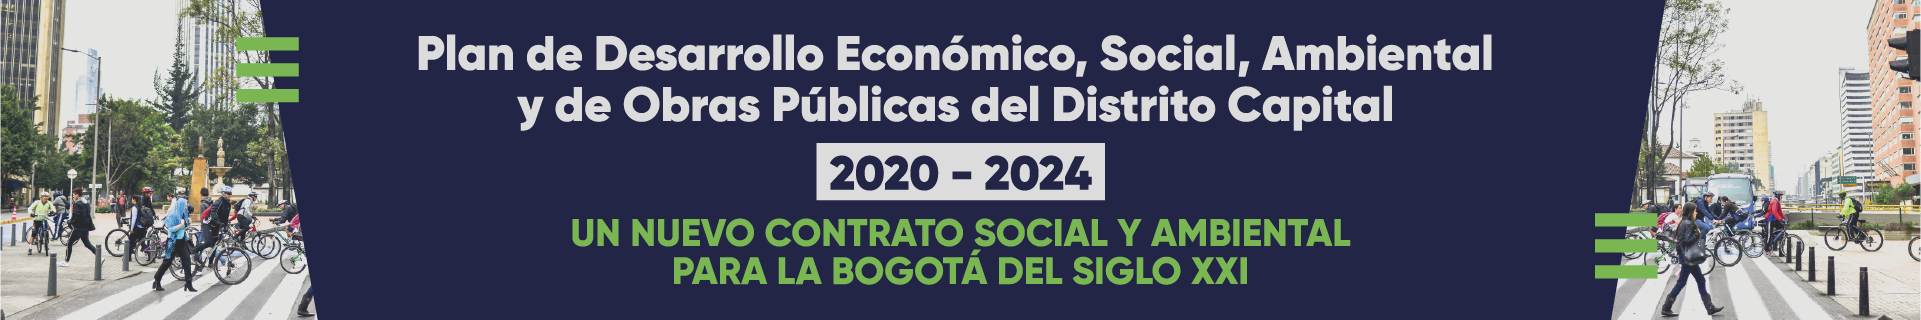 Plan de Desarrollo Económico, Social, Ambiental y de Obras Públicas del Distrito Capital  2020 - 2024